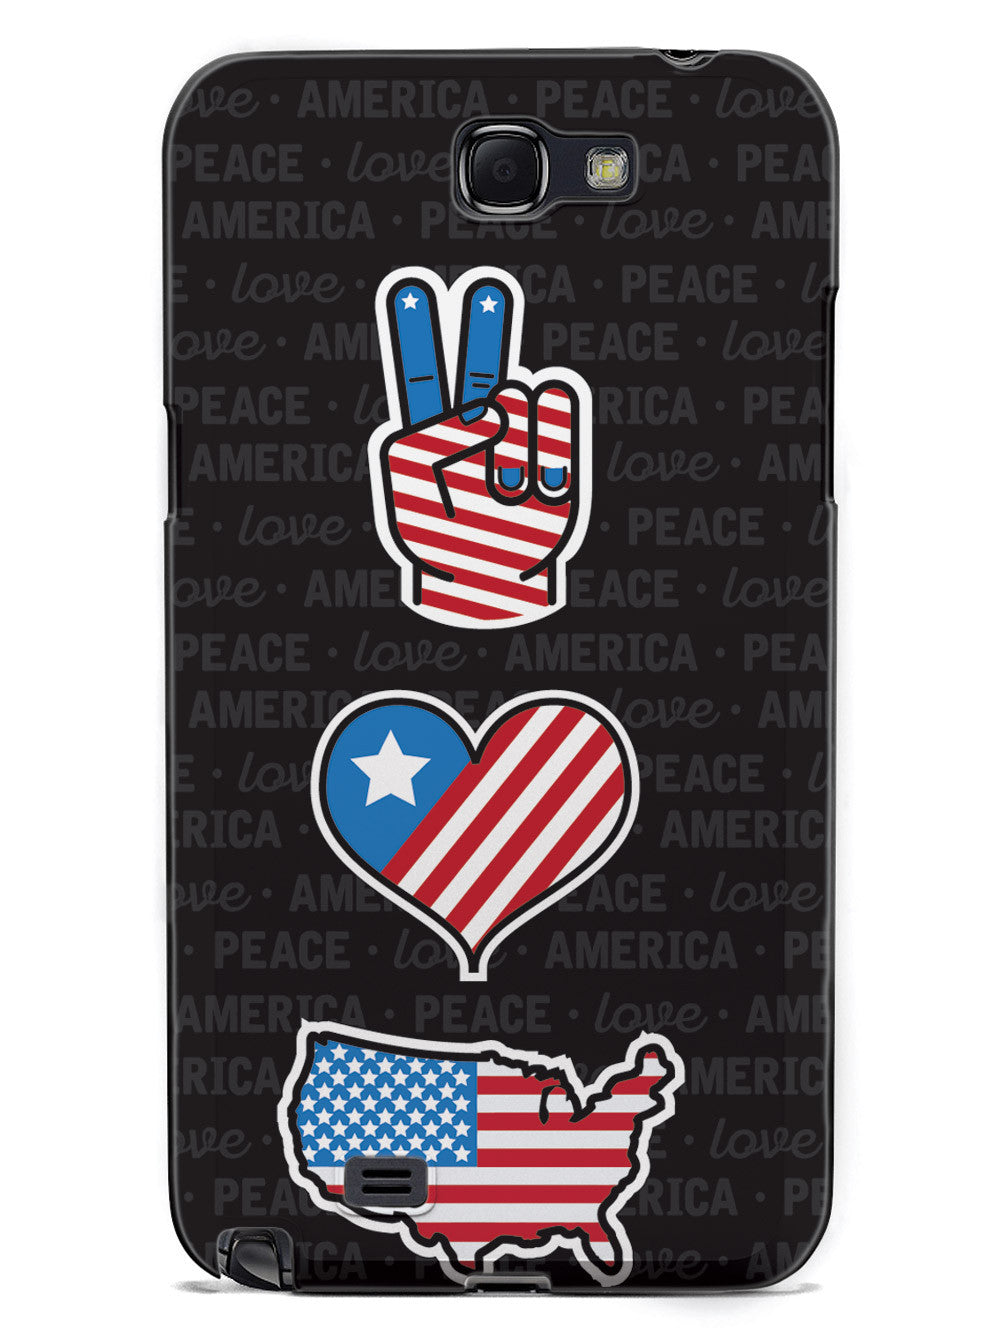 Peace, Love & America - Patriotic Case